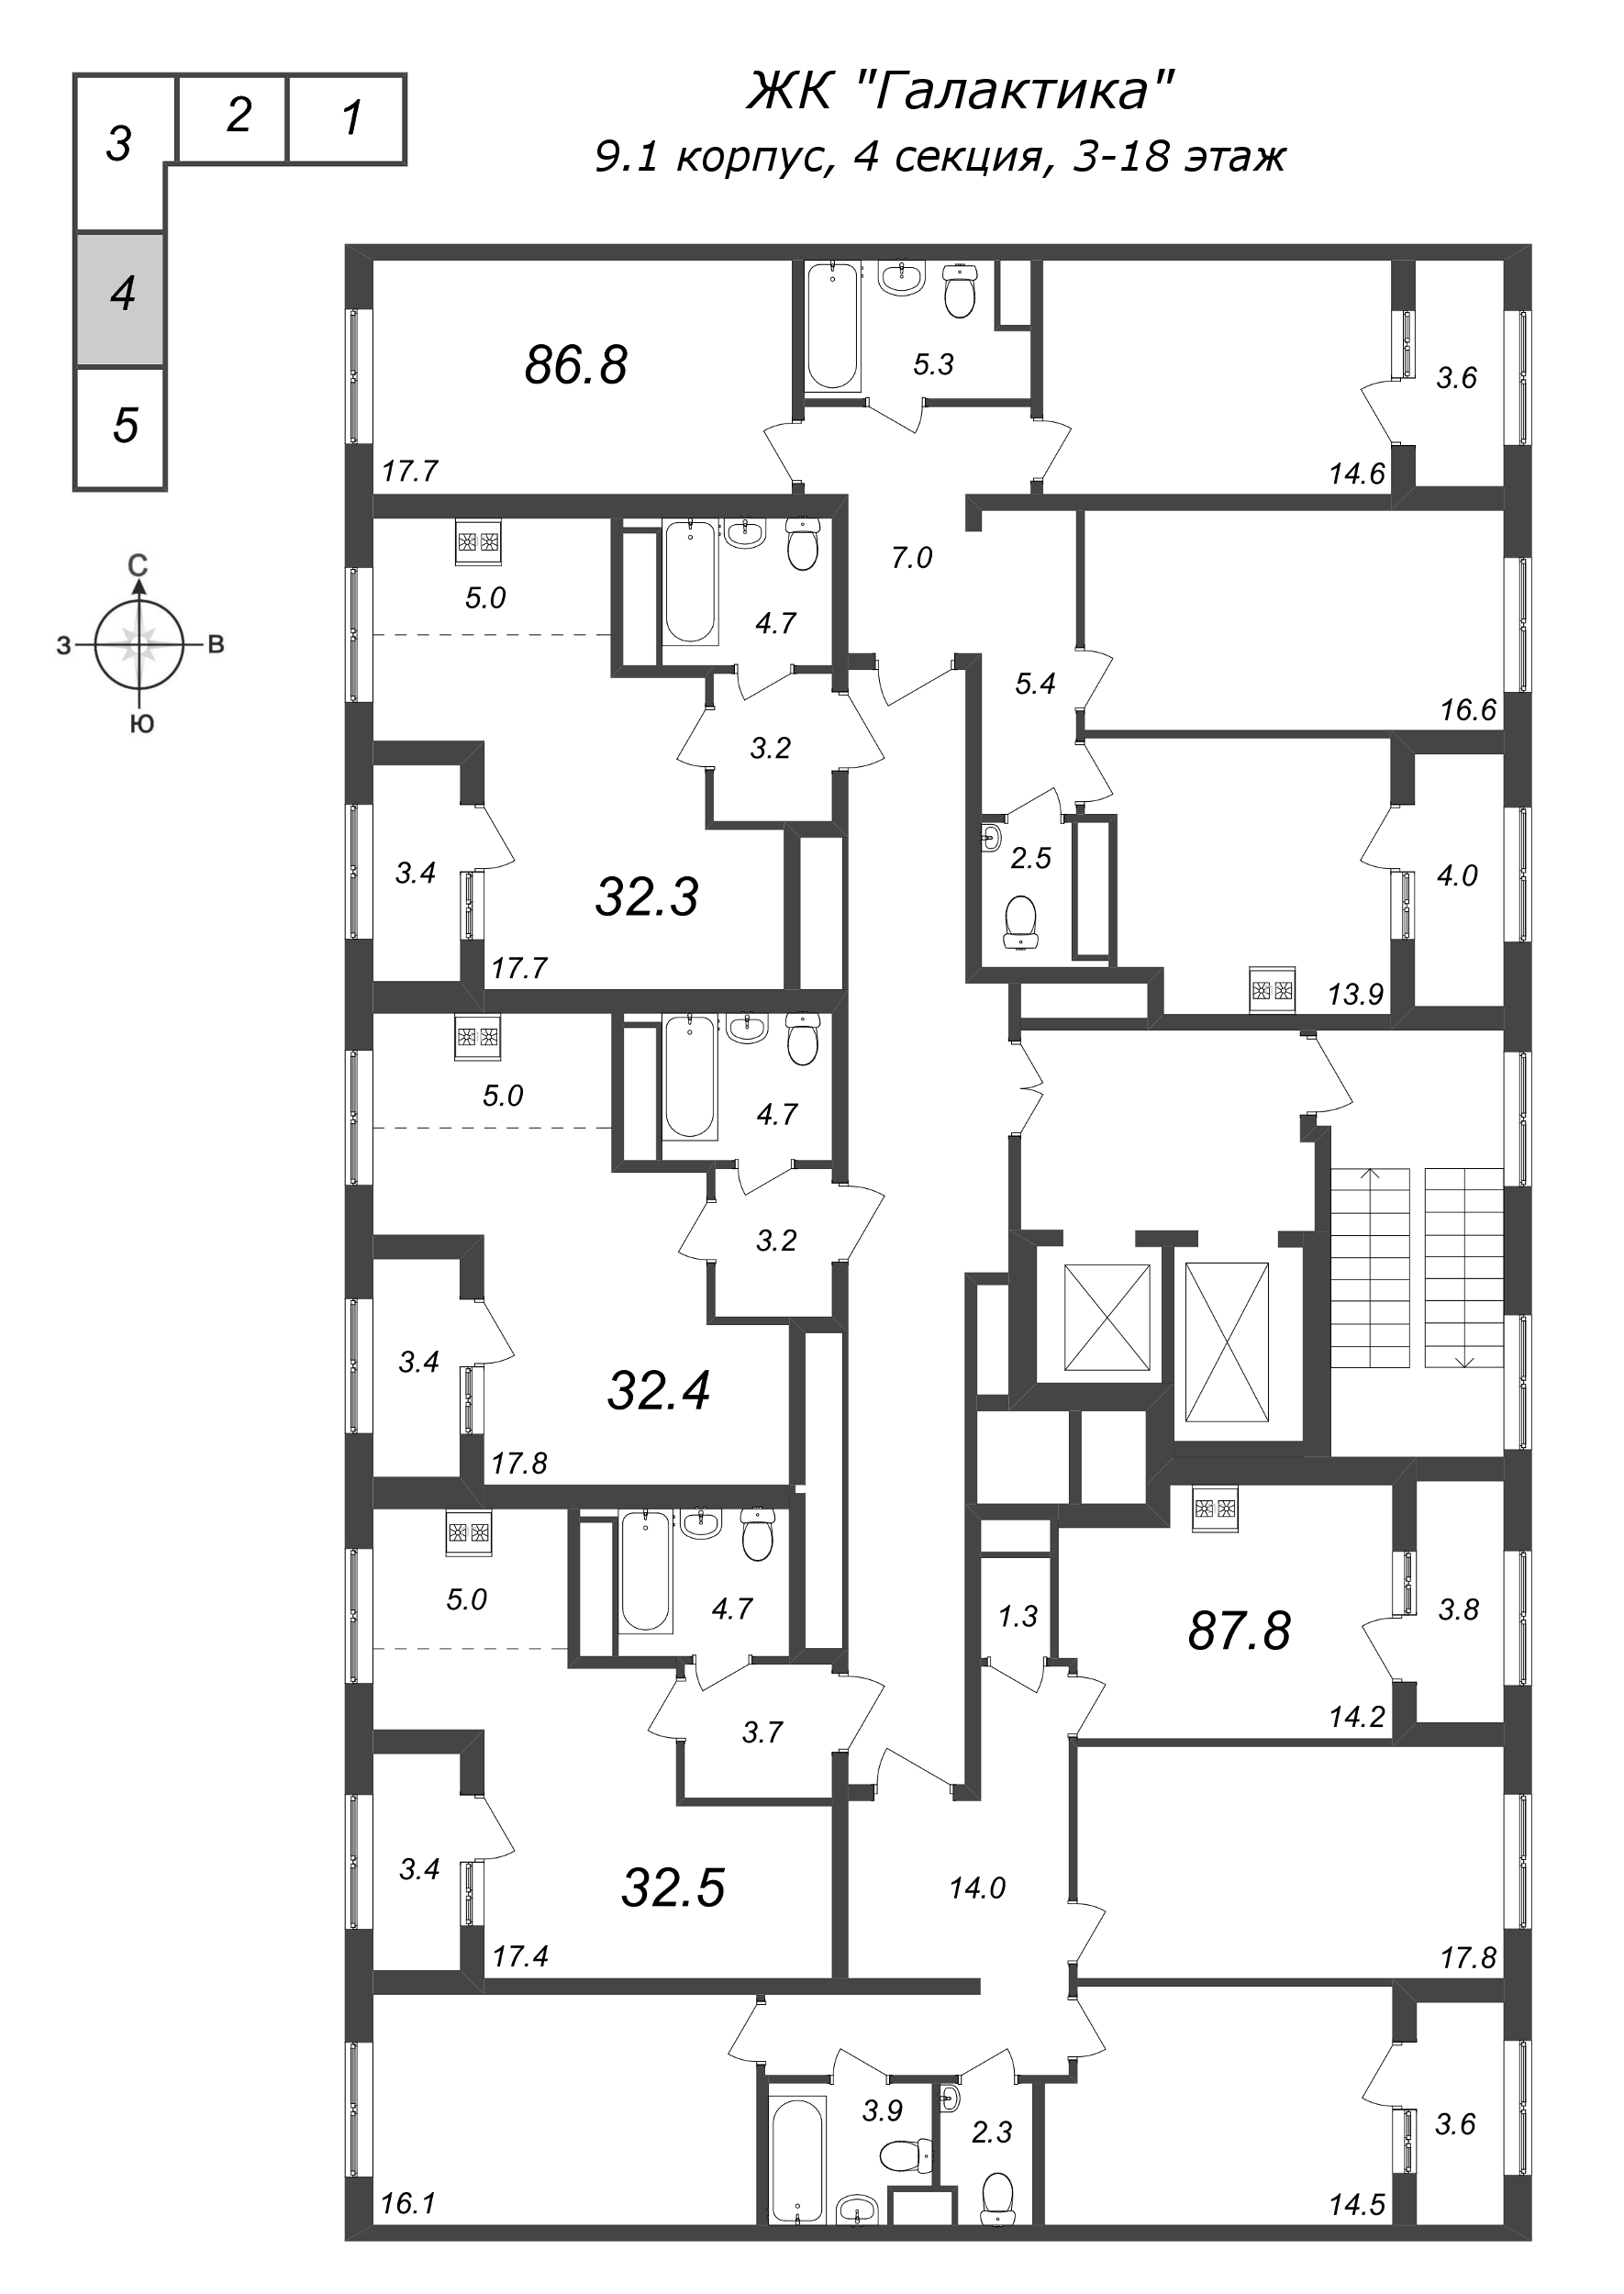 Квартира-студия, 32.3 м² в ЖК "Галактика" - планировка этажа